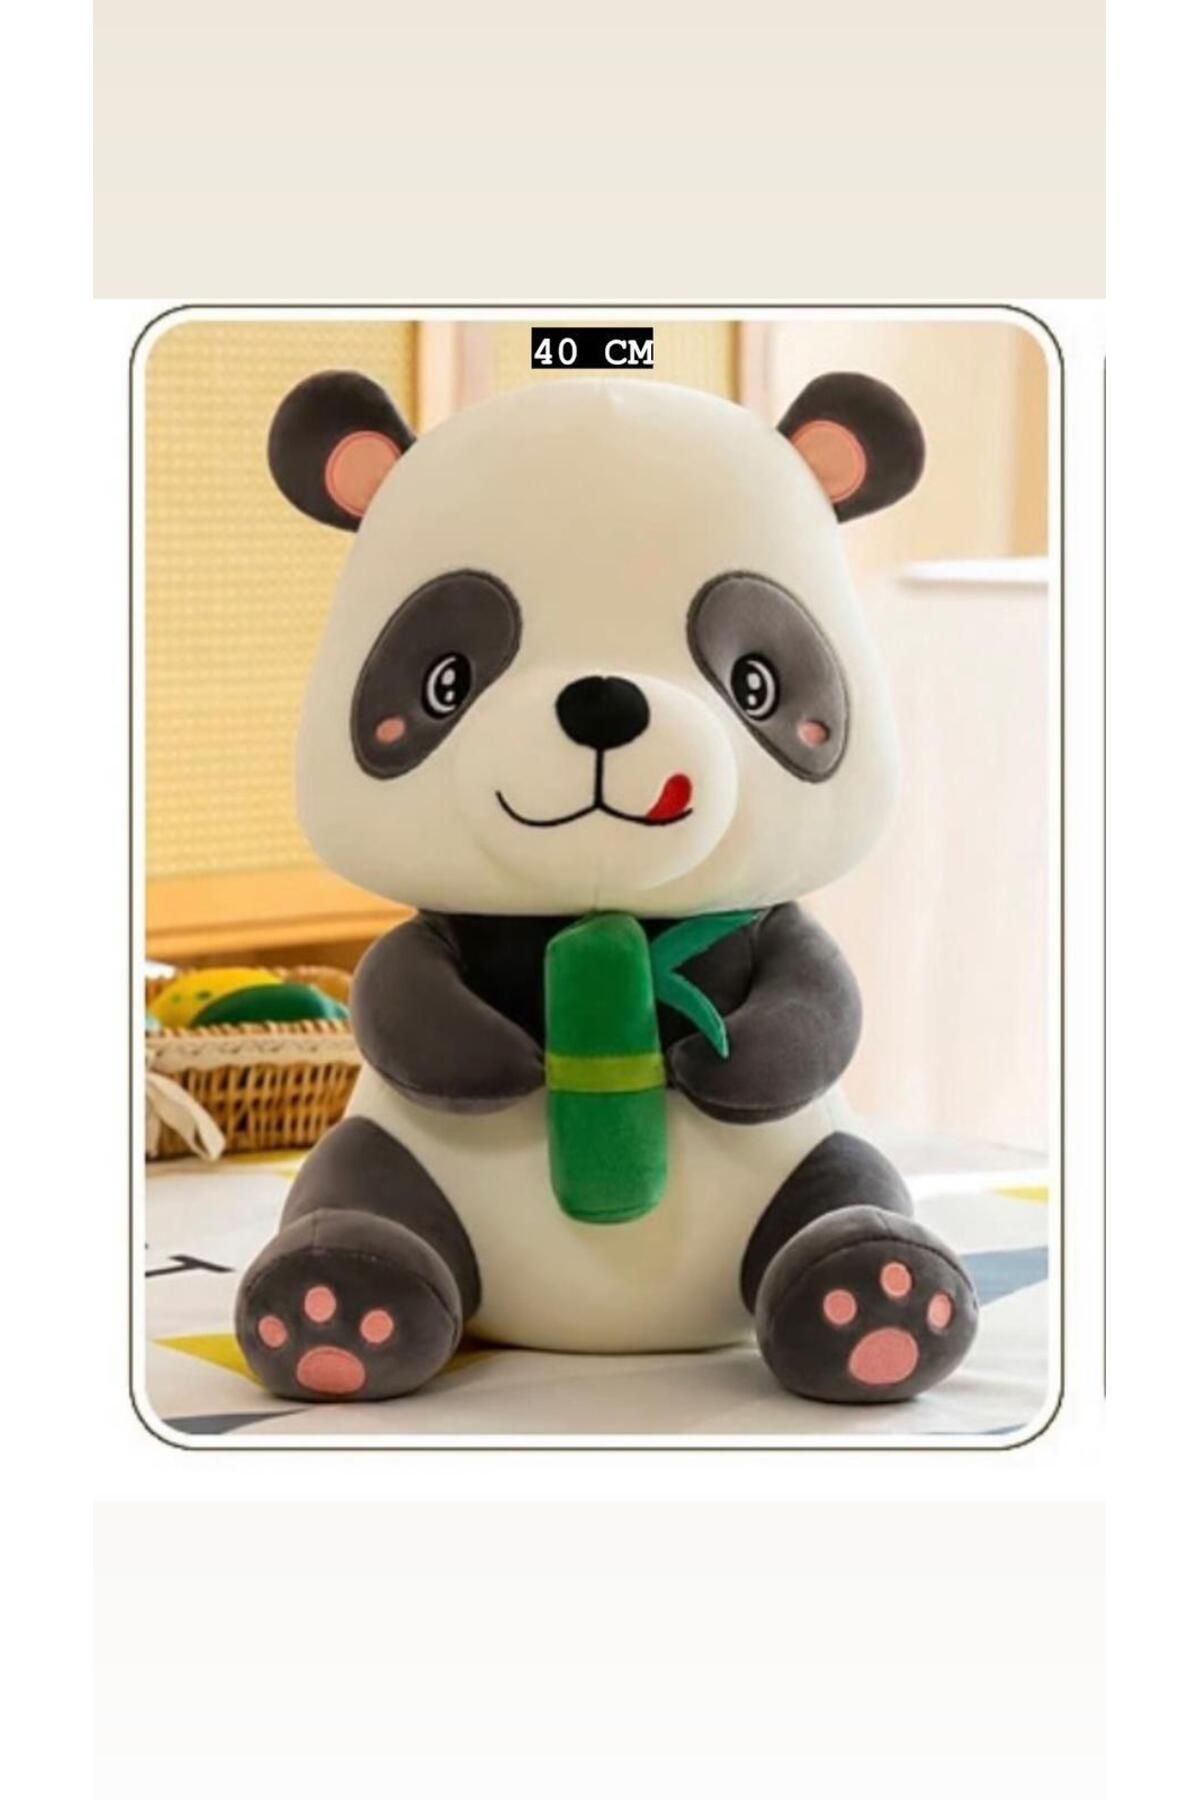 MEM STORE Panda Peluş Oyuncak Ayıcık Uyku Ve Oyun Arkadaşım 40 Cm